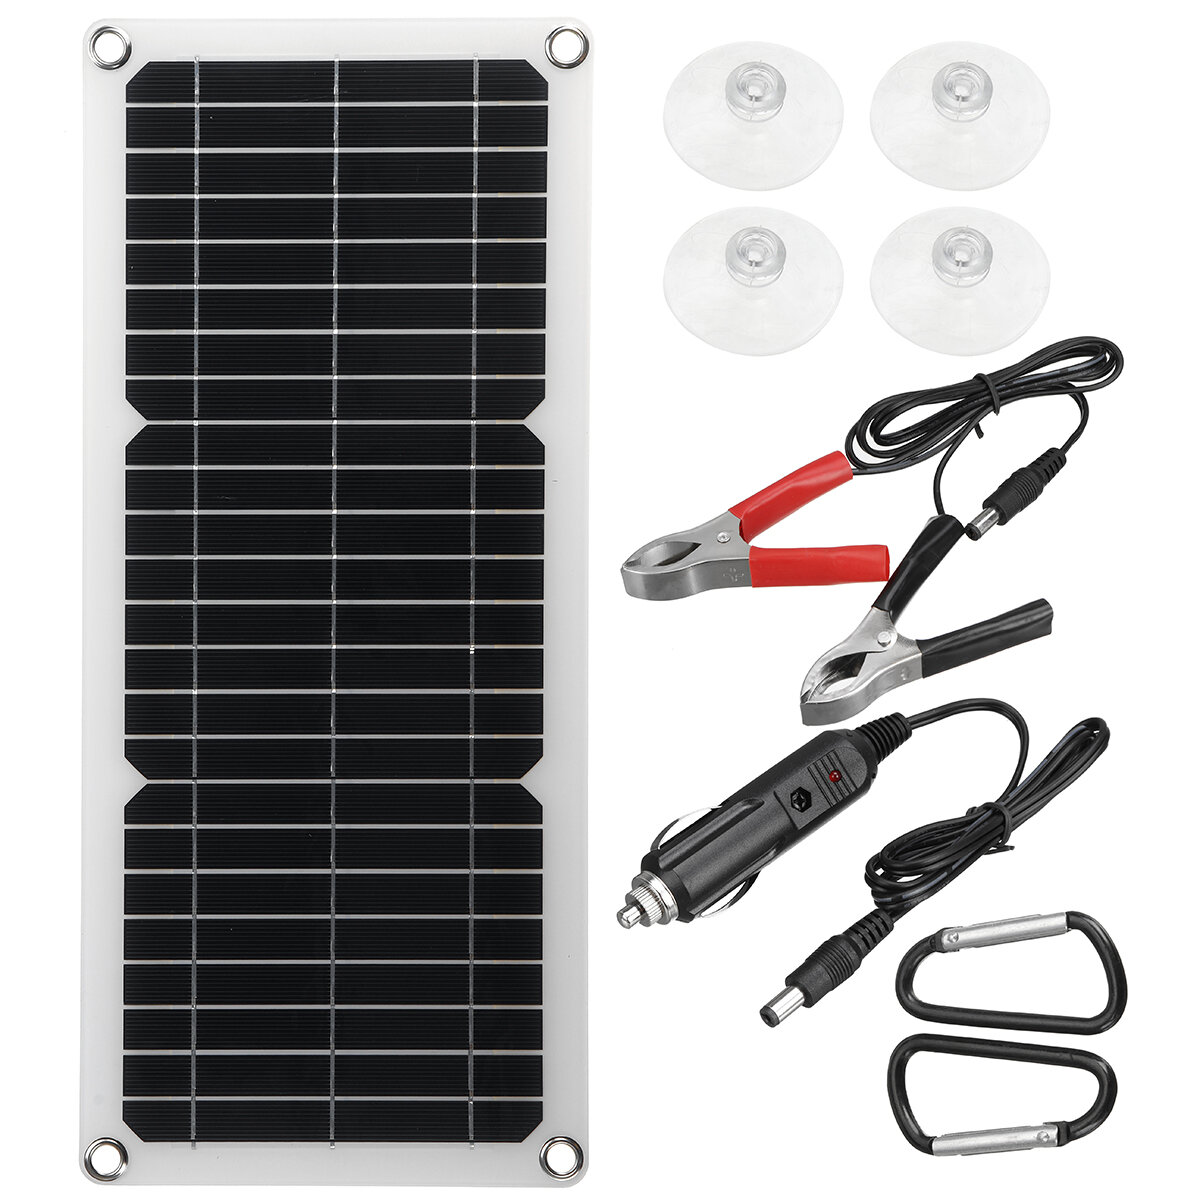 12W Solar Panel USB Çıkışı bileme Şarj Cihazları Solar Hücreler Taşınabilir Outdoor Kampçılık Acil Durum Gücü